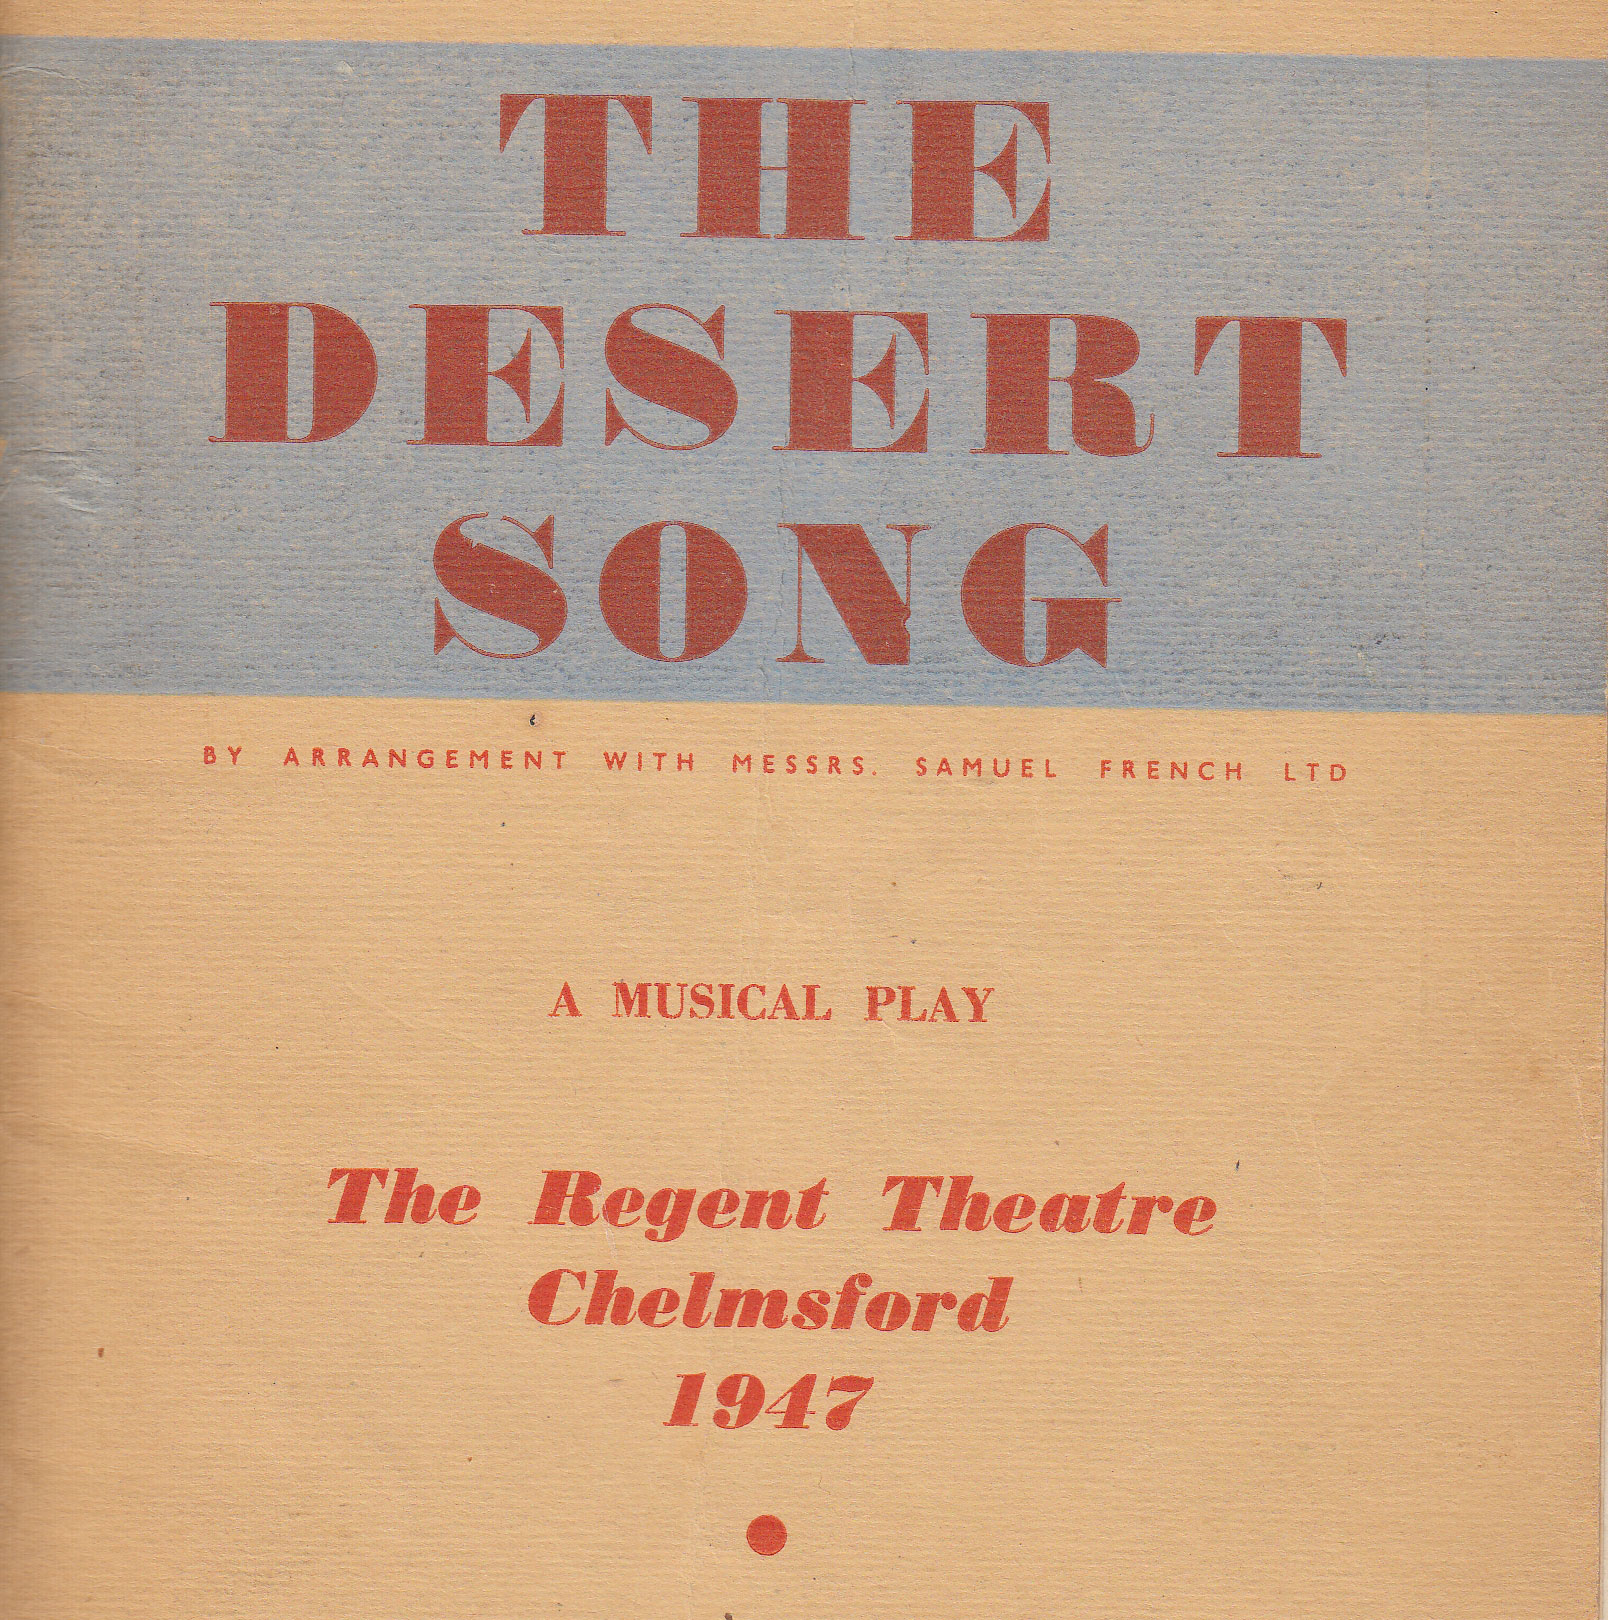 The Desert Song (1947)